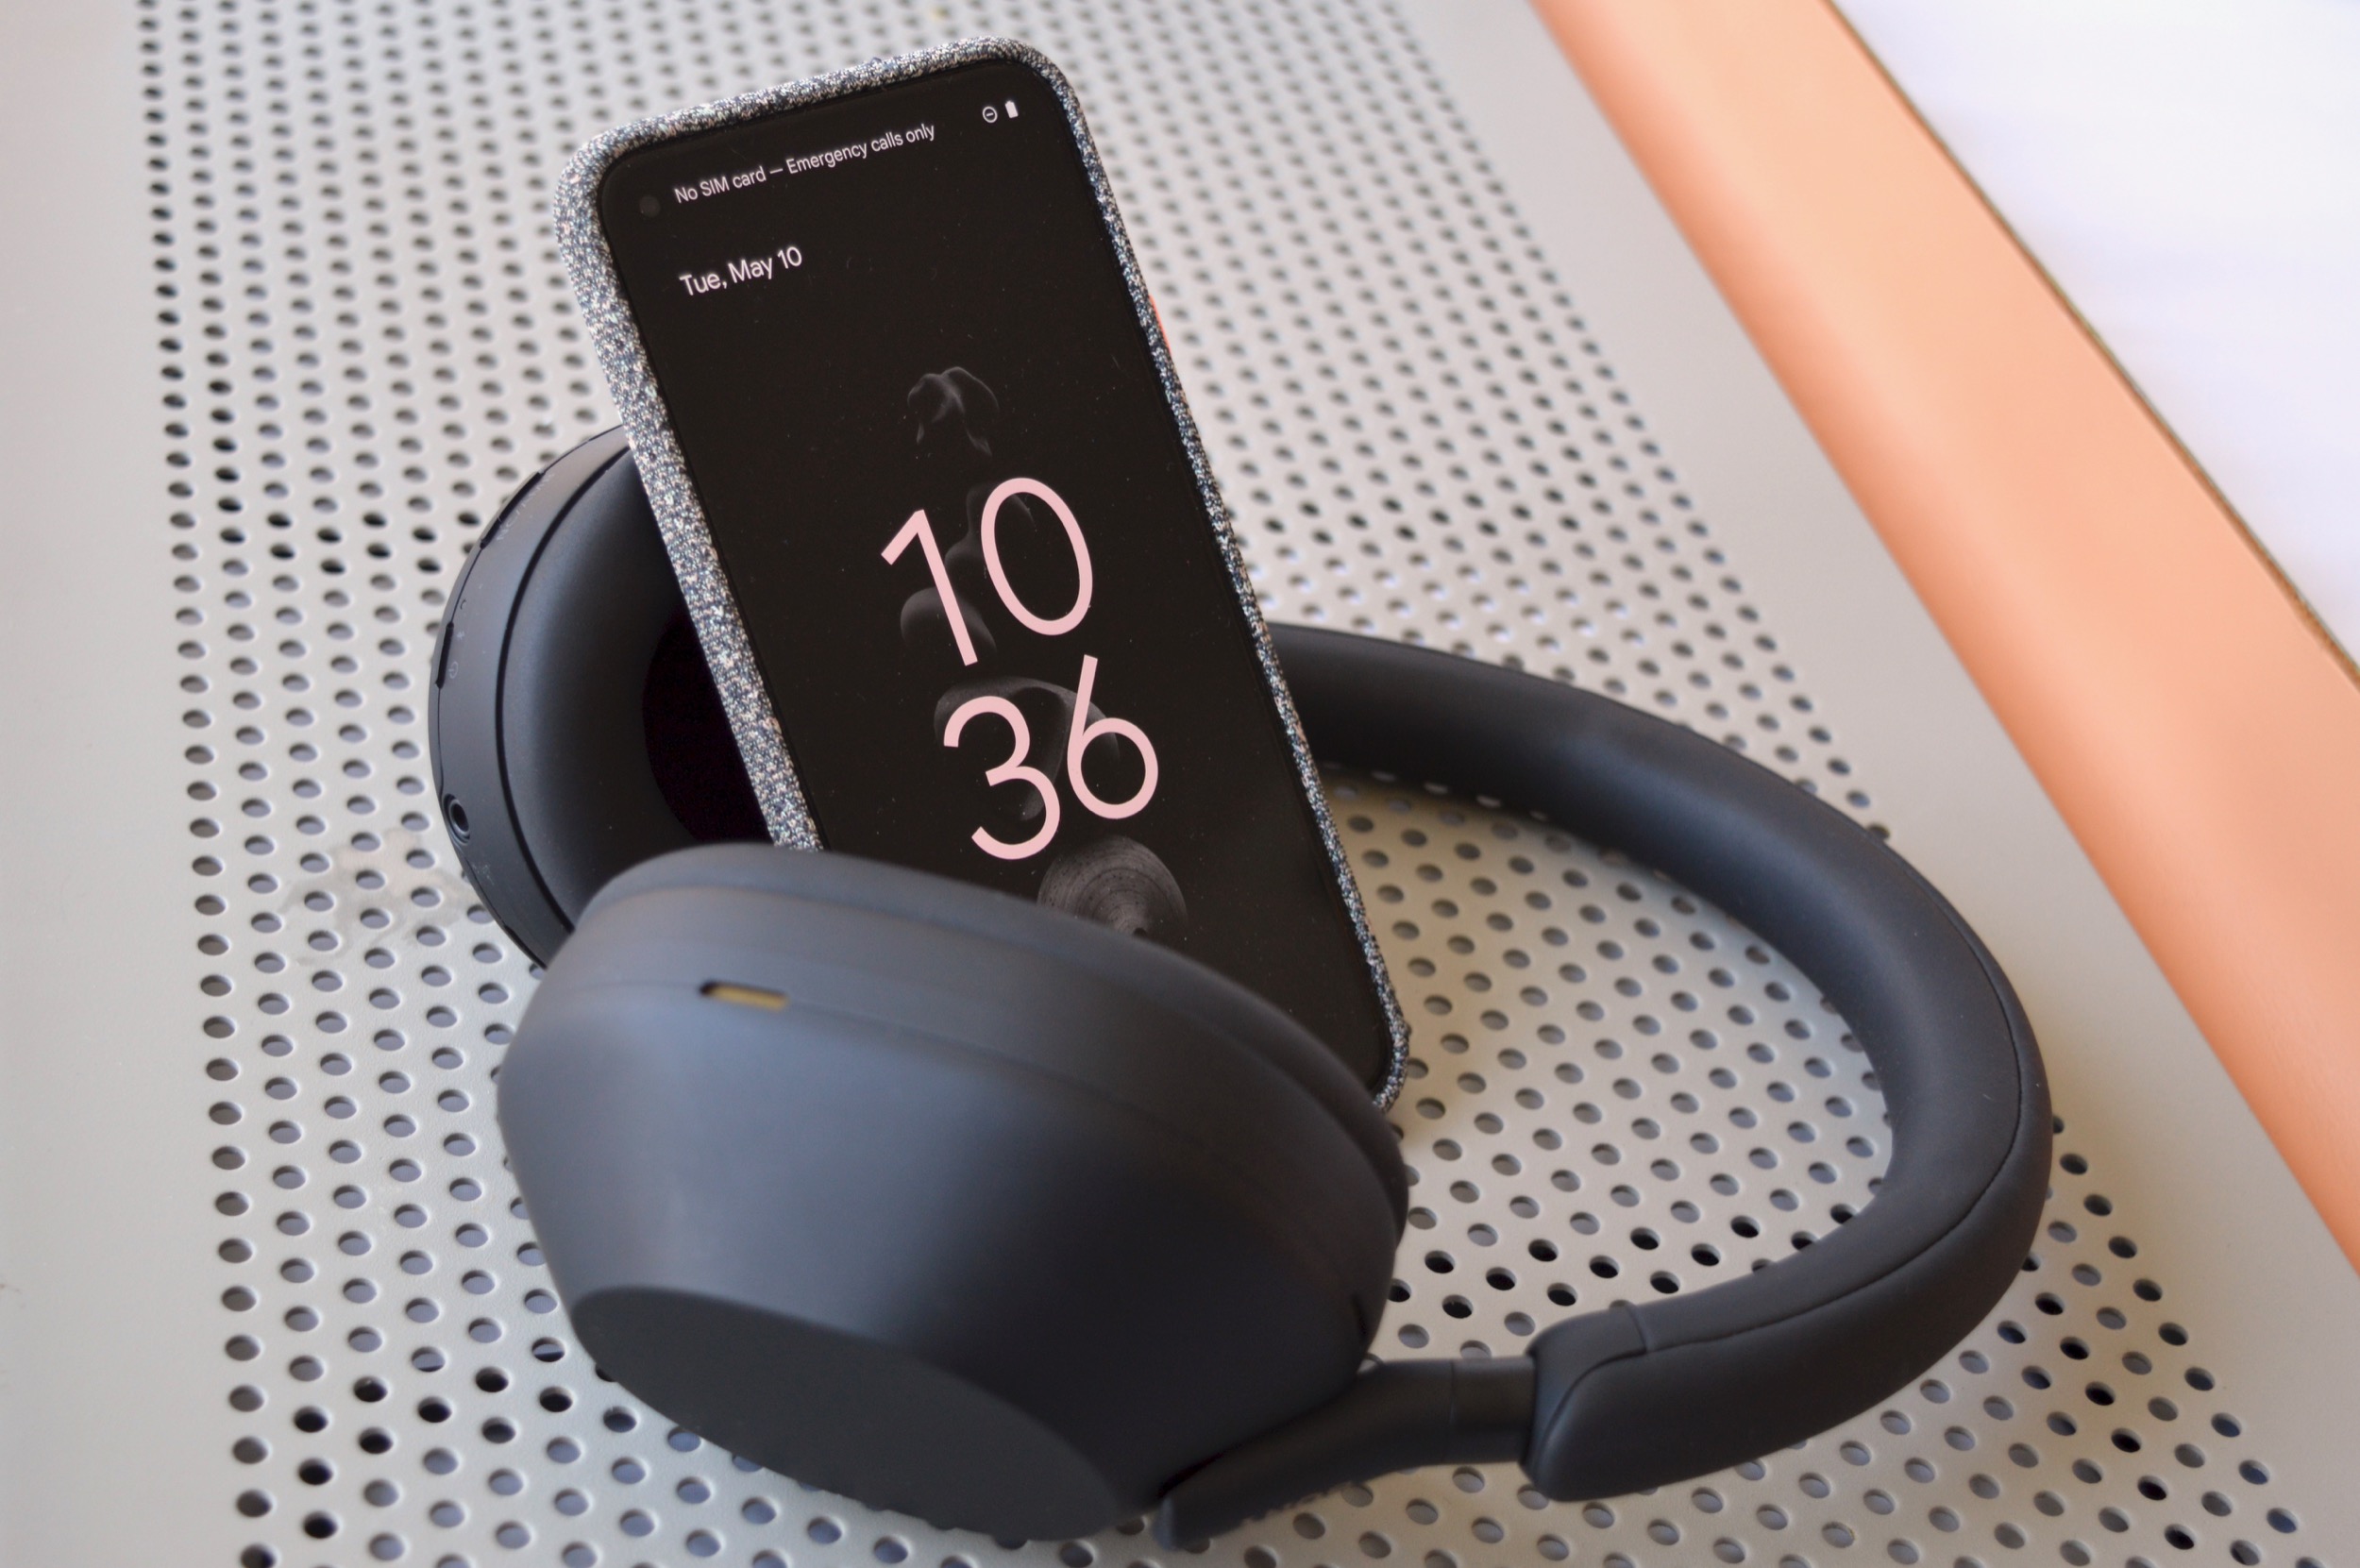 Fones de ouvido sem fio Sony WH-1000XM5 vistos com um smartphone.